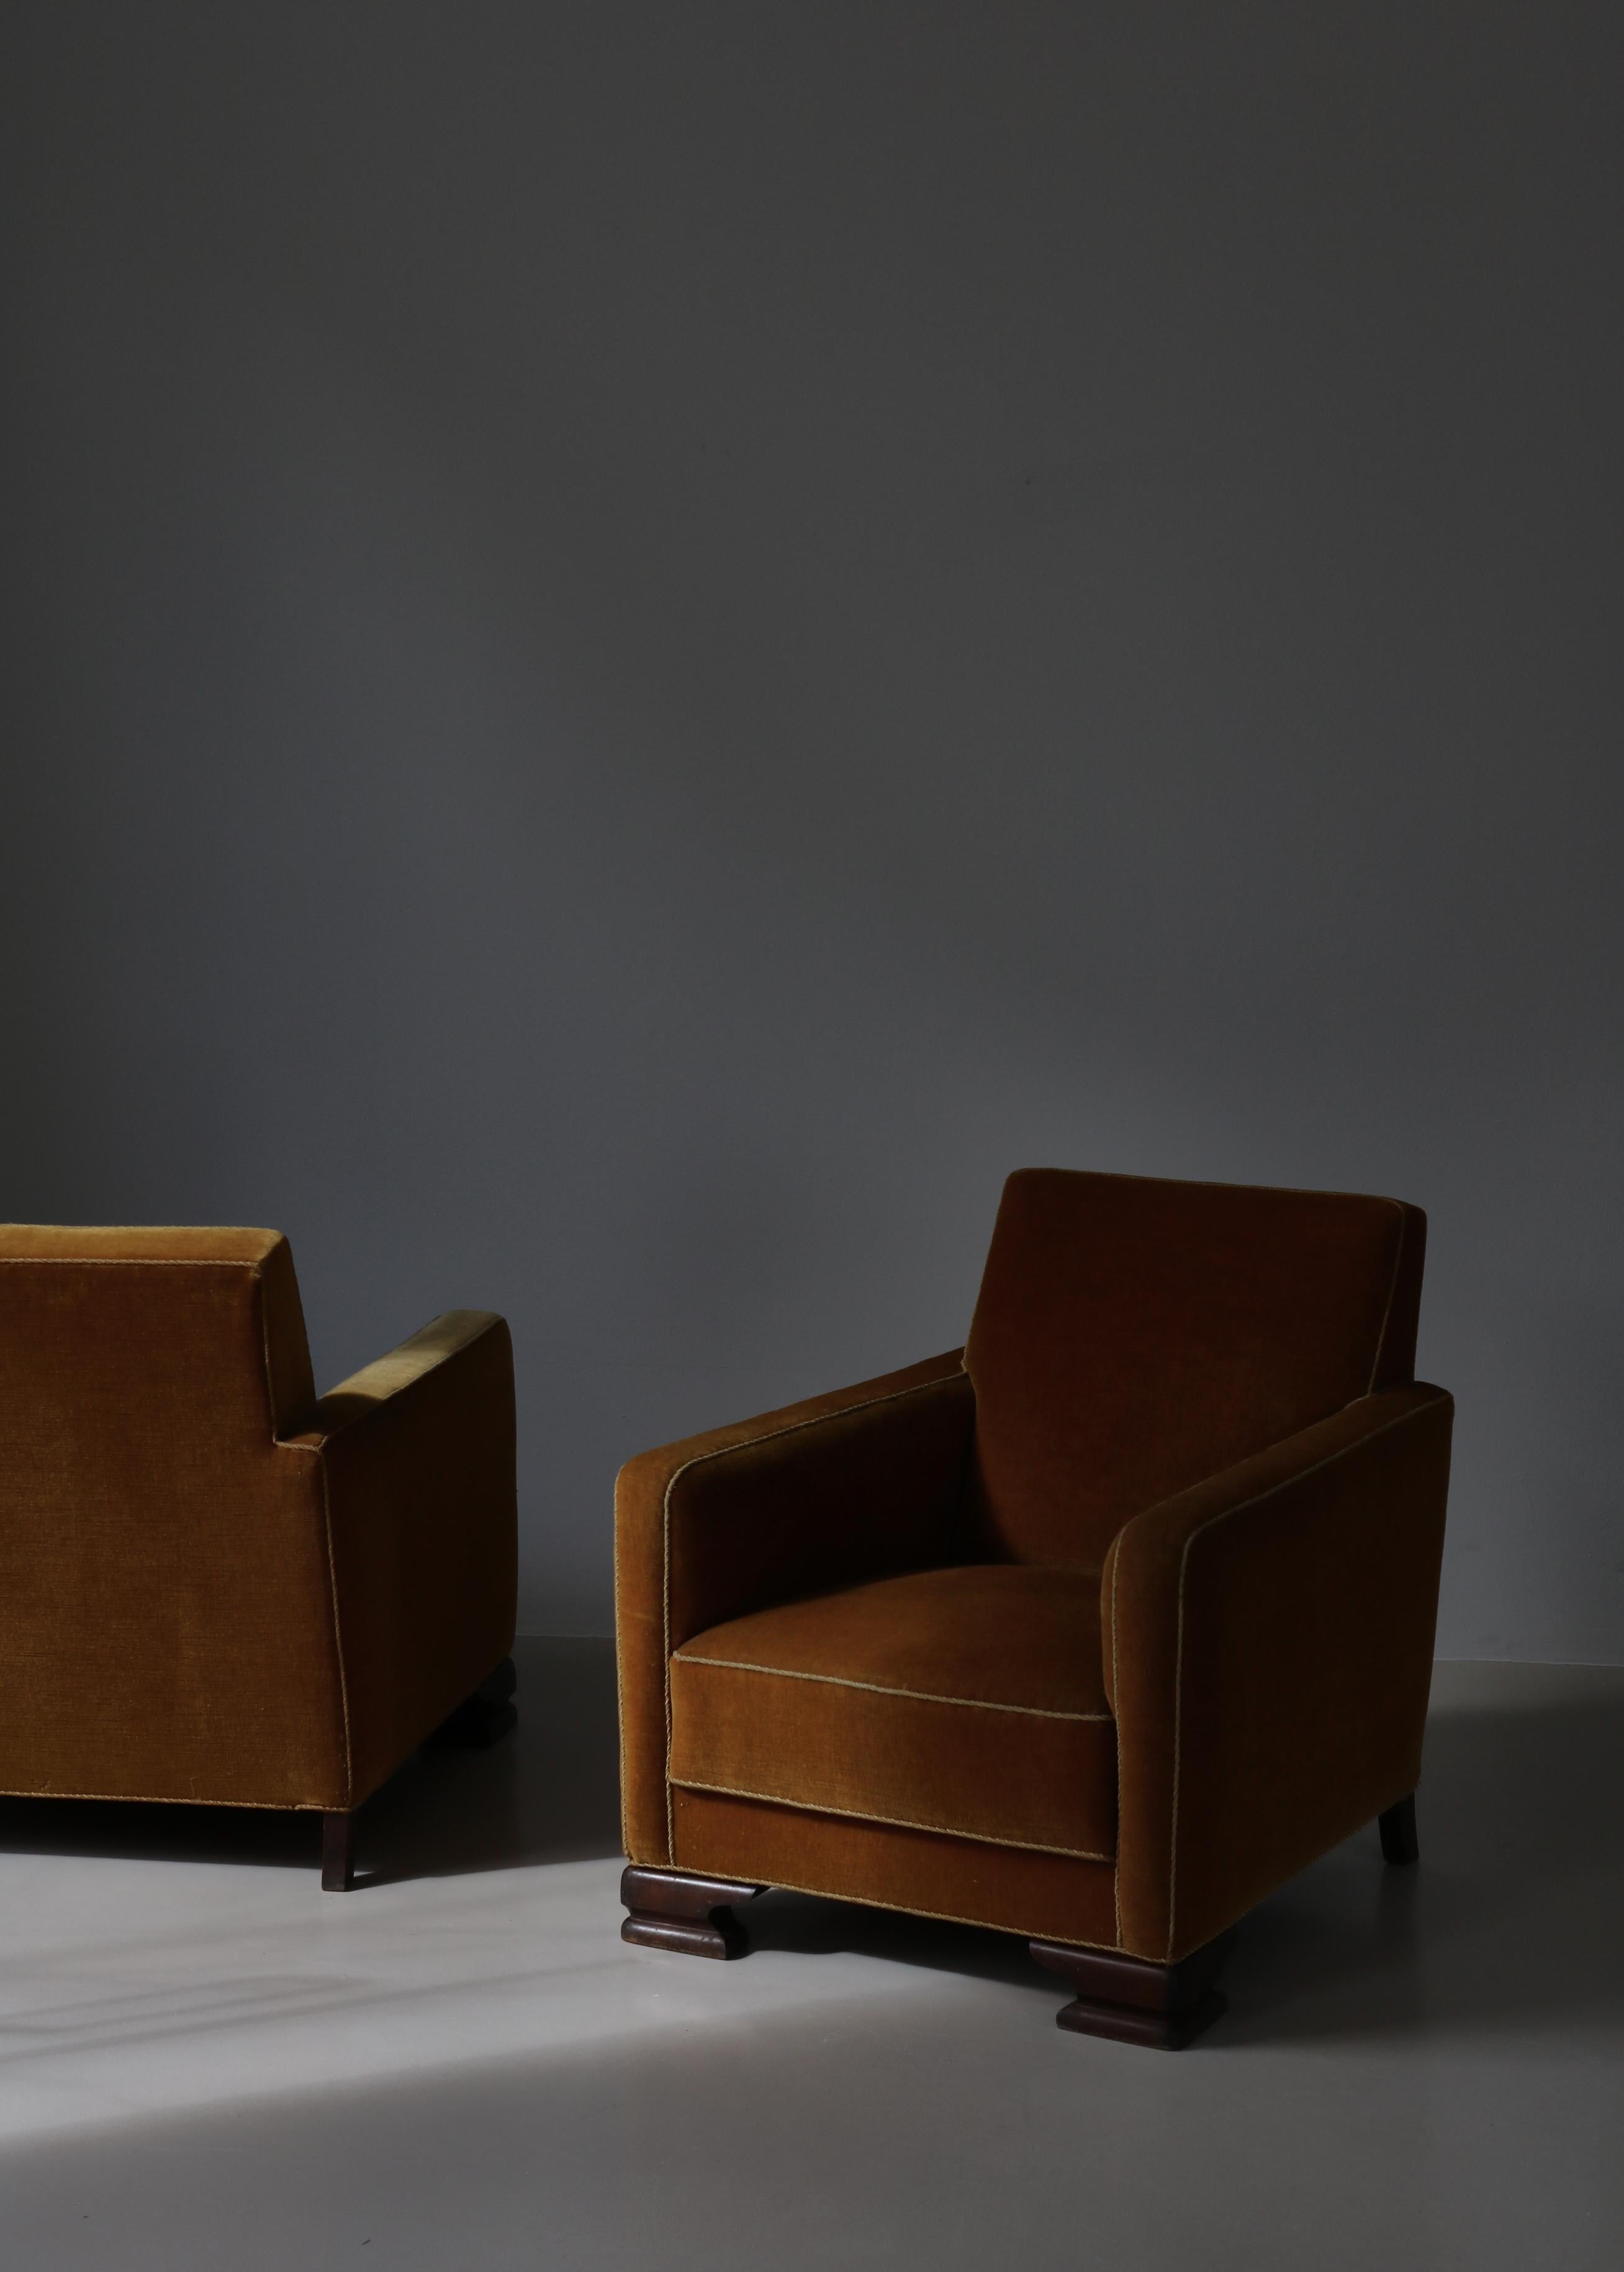 Paire unique de chaises longues Art déco fabriquées dans les années 1930 par un ébéniste danois. Ces jolies chaises ont conservé leur revêtement d'origine en mohair jaune chaud et sont très confortables.

Mesures supplémentaires : 
Profondeur du